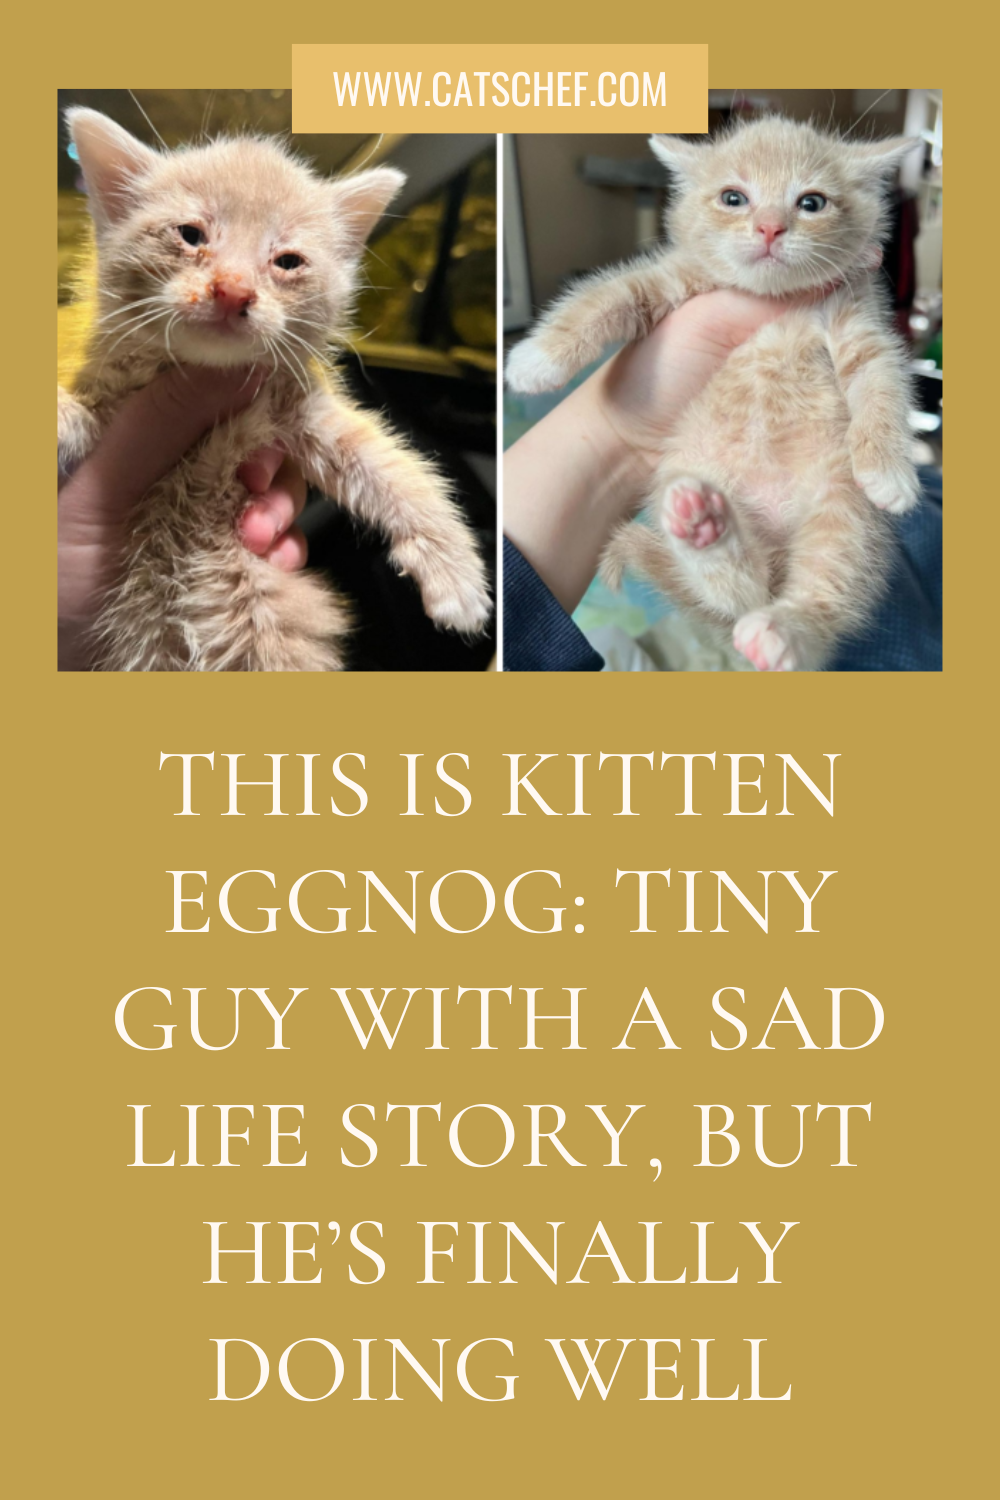 Bu Yavru Kedi Eggnog: Hüzünlü Bir Hayat Hikayesi Olan Minik Adam, Ama Sonunda İyileşiyor